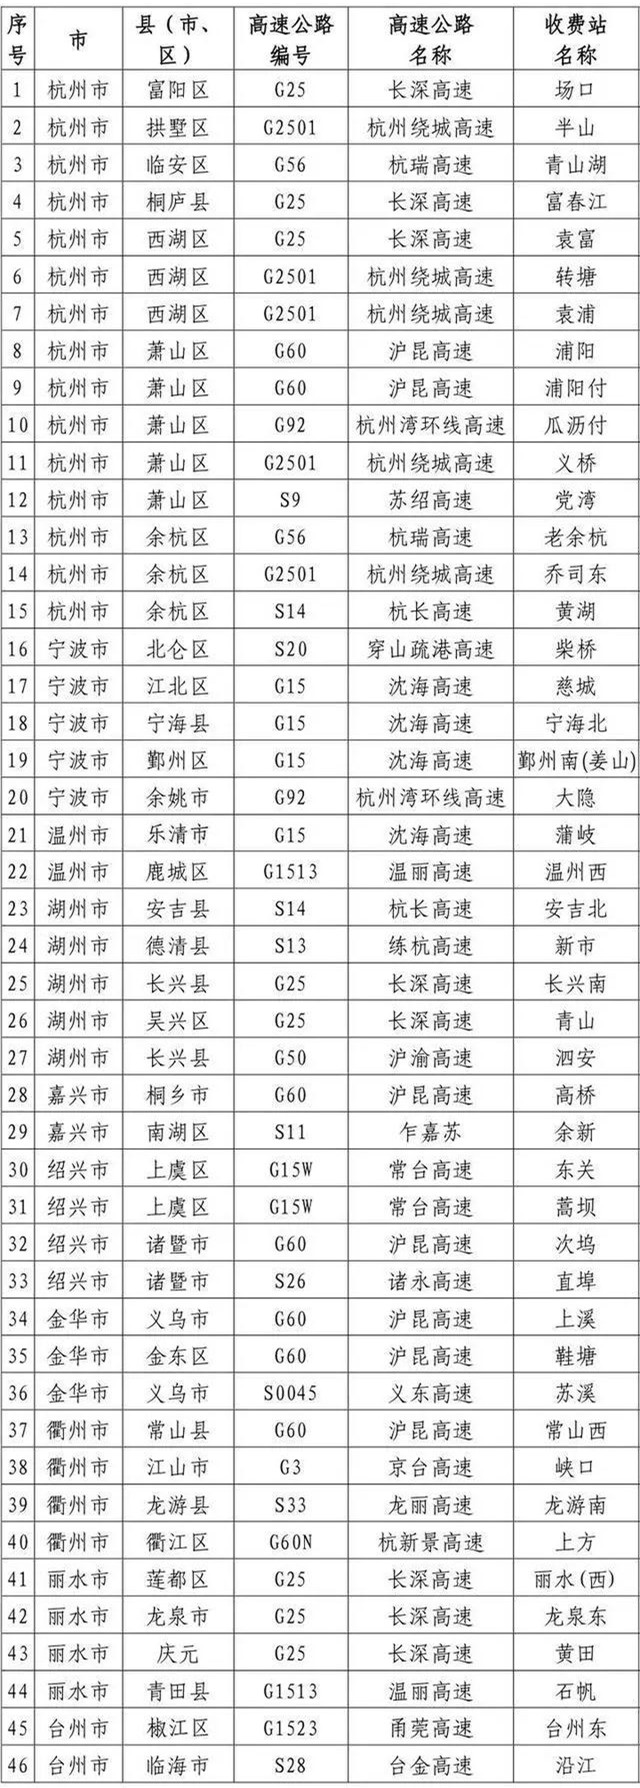 2020年2月8日，浙江省交通运输厅和浙江省公安厅联合发布《关于开通专门用于货车通行的部分高速公路收费站的紧急通知》，公布了要求在2月8日开通的第一批计46个收费站的名单。